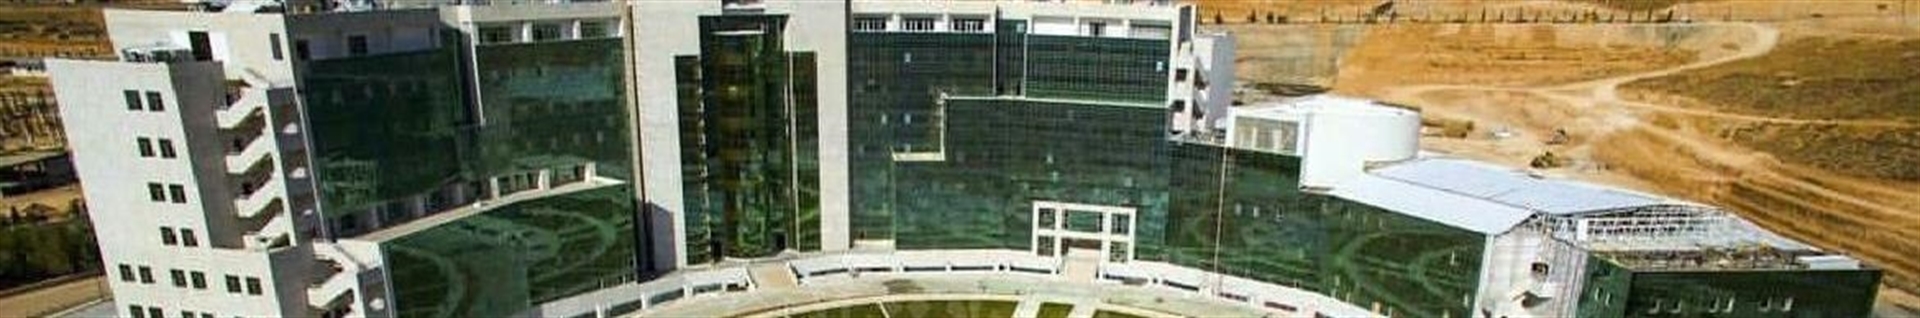 بیمارستان ابوعلی سینا شیراز (خیریه آموزشی،پژوهشی و پیوند اعضا)